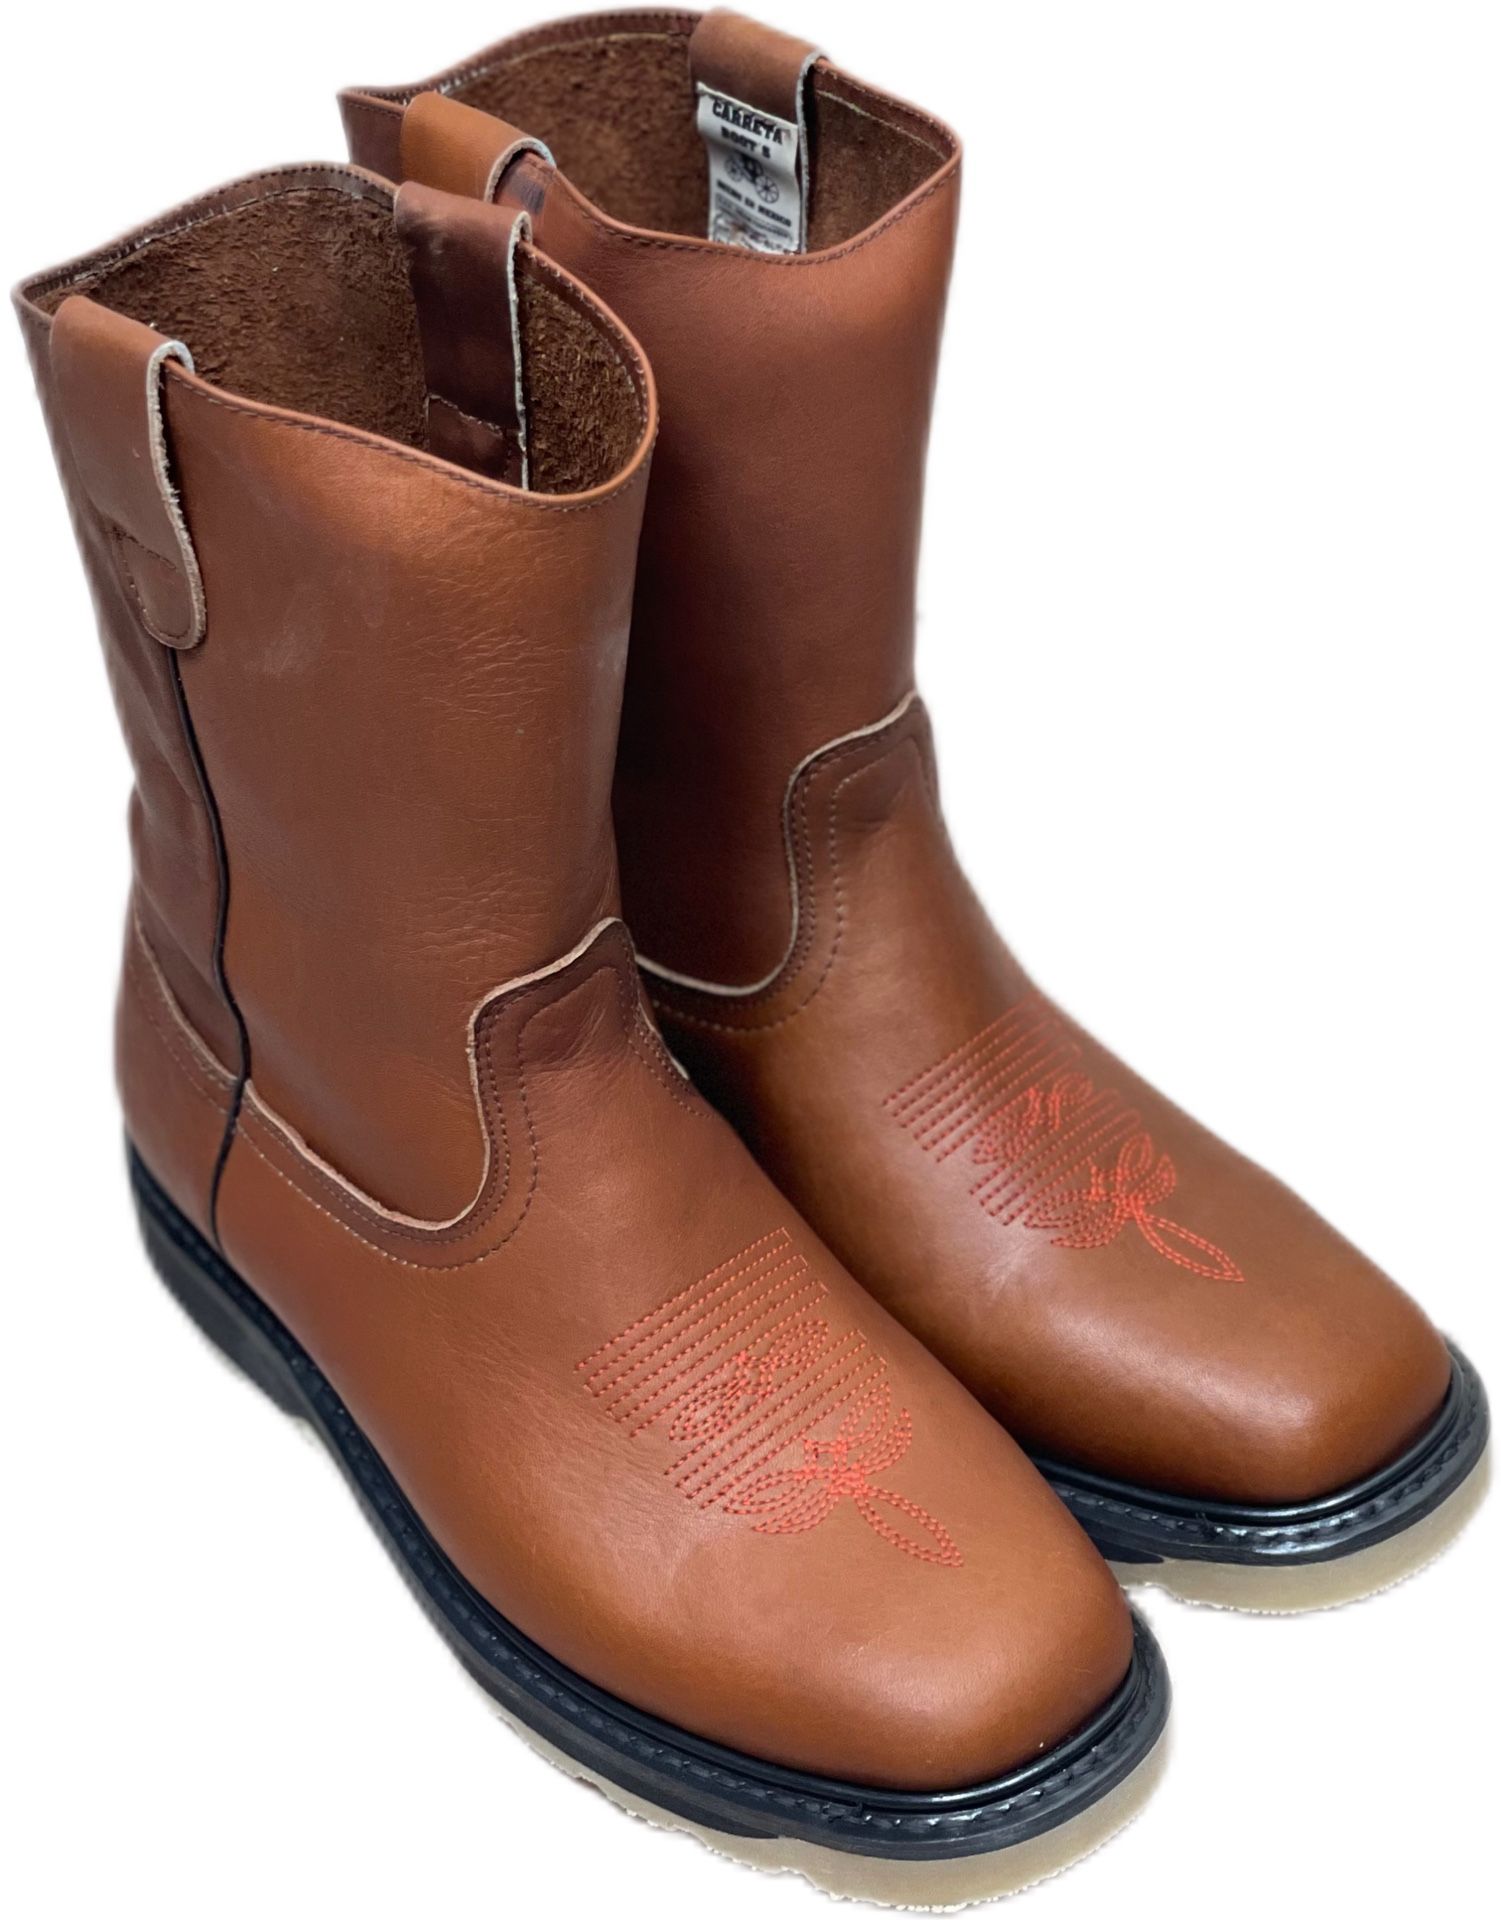 Steel Toe Work Boots - Bota De Trabajo De Piel 